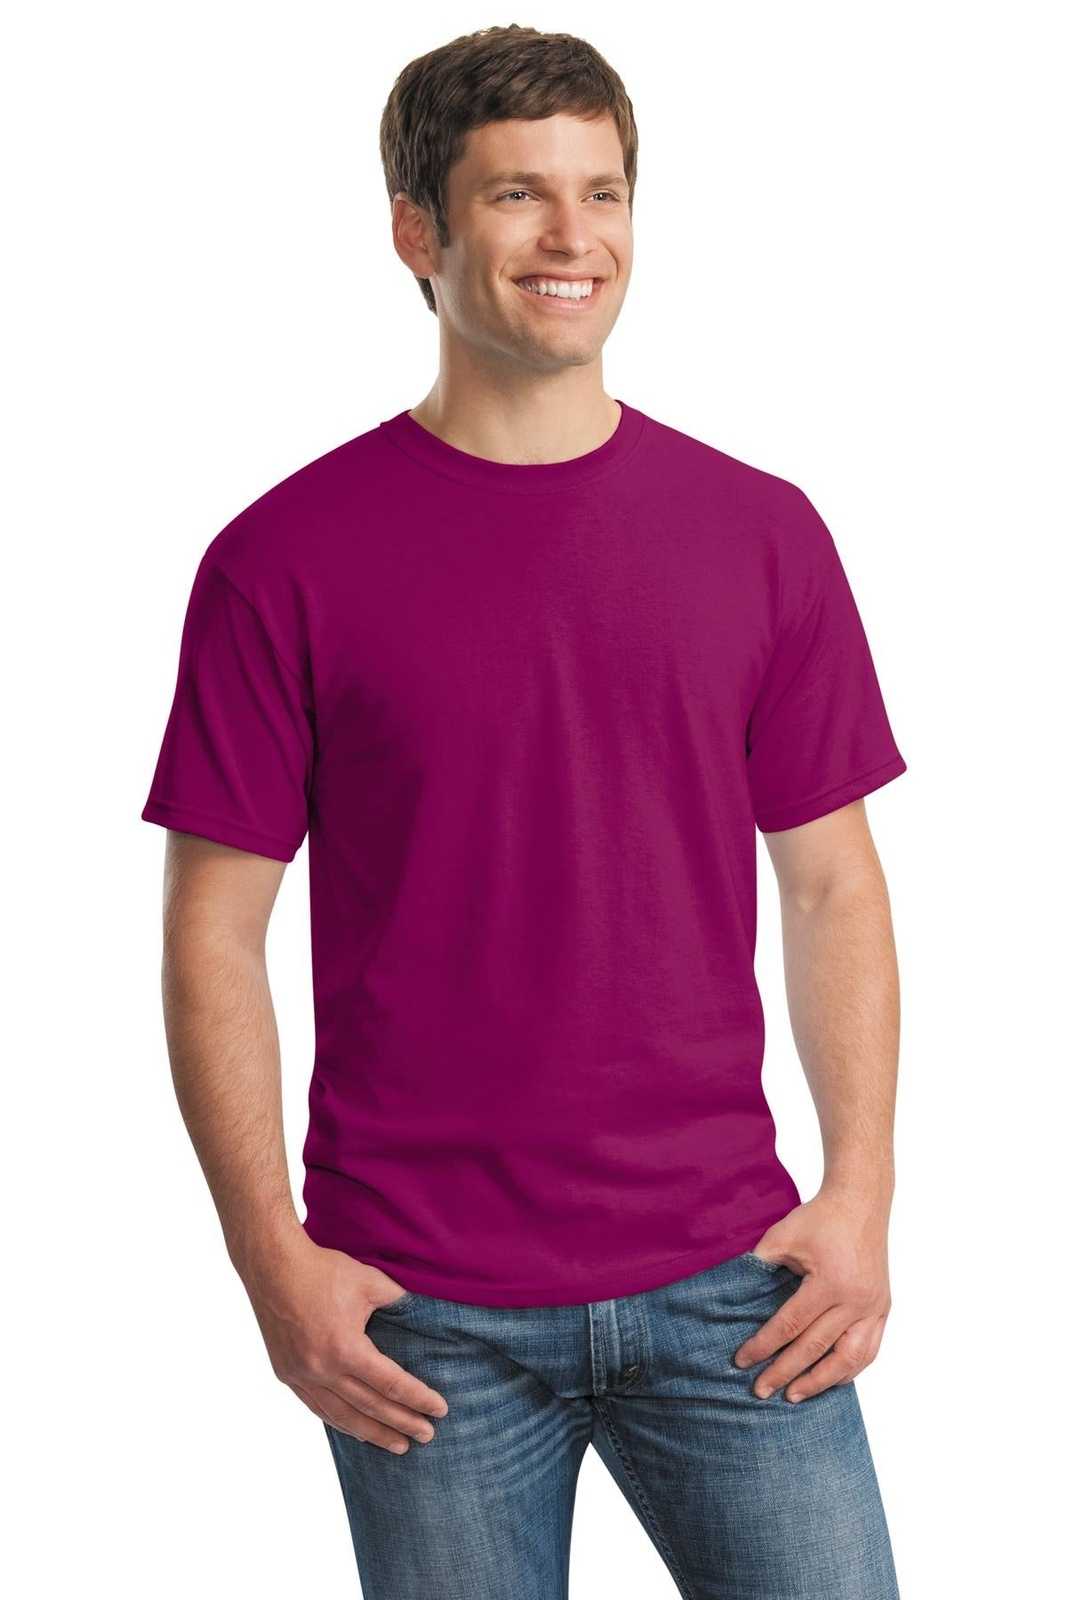 Gildan 5000 Heavy Cotton 100% Cotton T-Shirt - Berry - HIT a Double